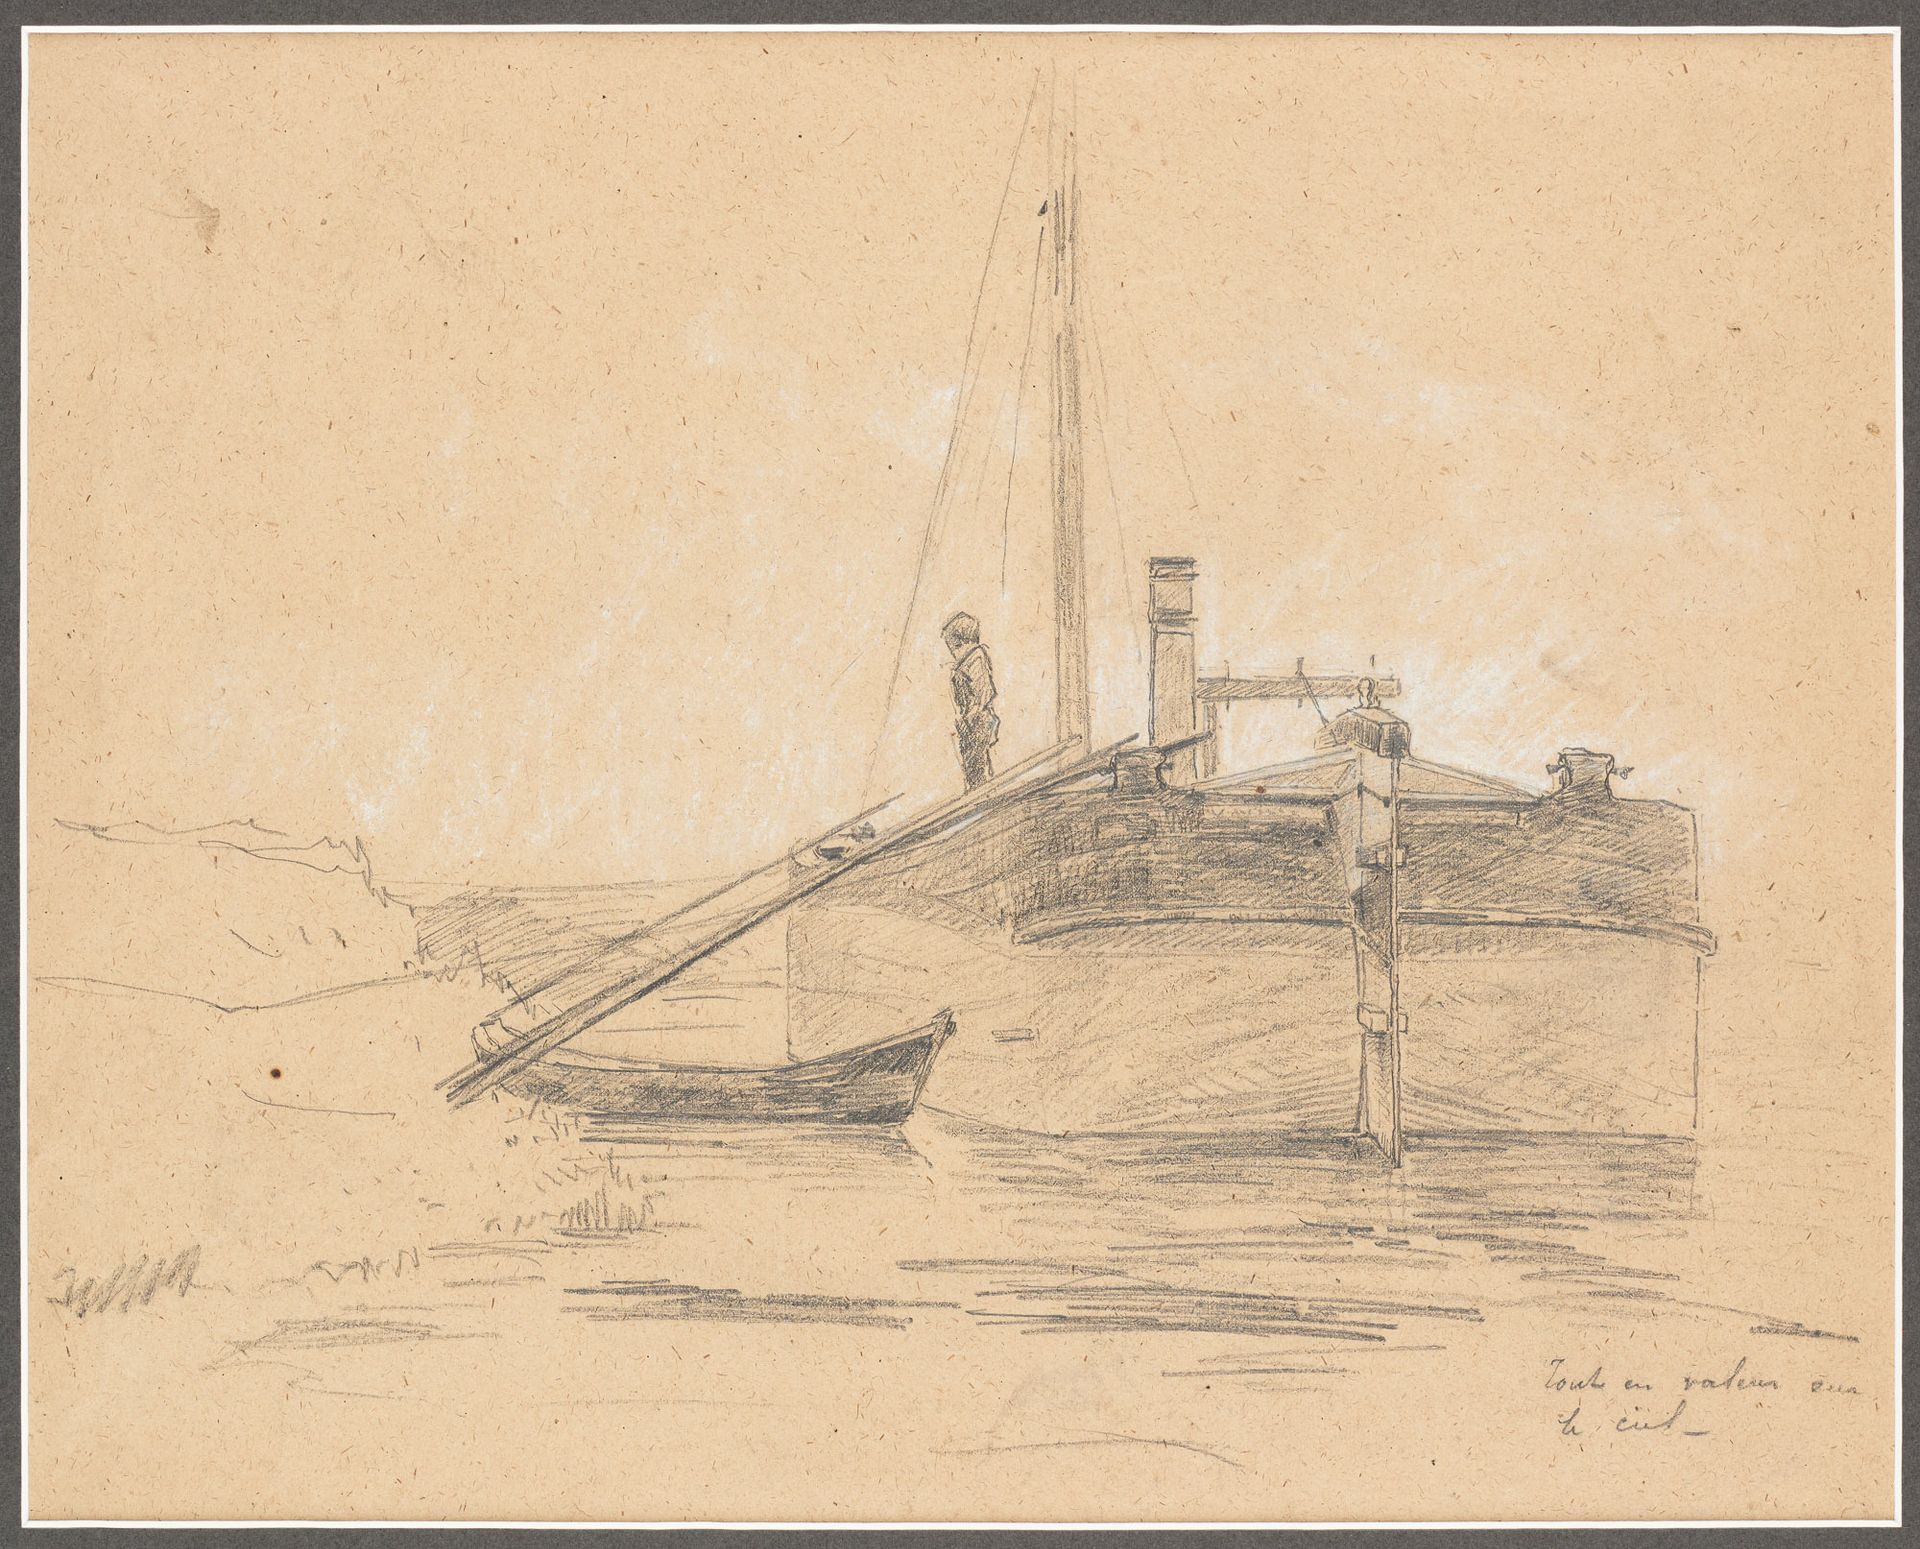 Adrien-Charles LE MAYEUR DE MERPRES École belge (1844-1923) 纸上炭笔画：男人在他的驳船上。

作者：&hellip;